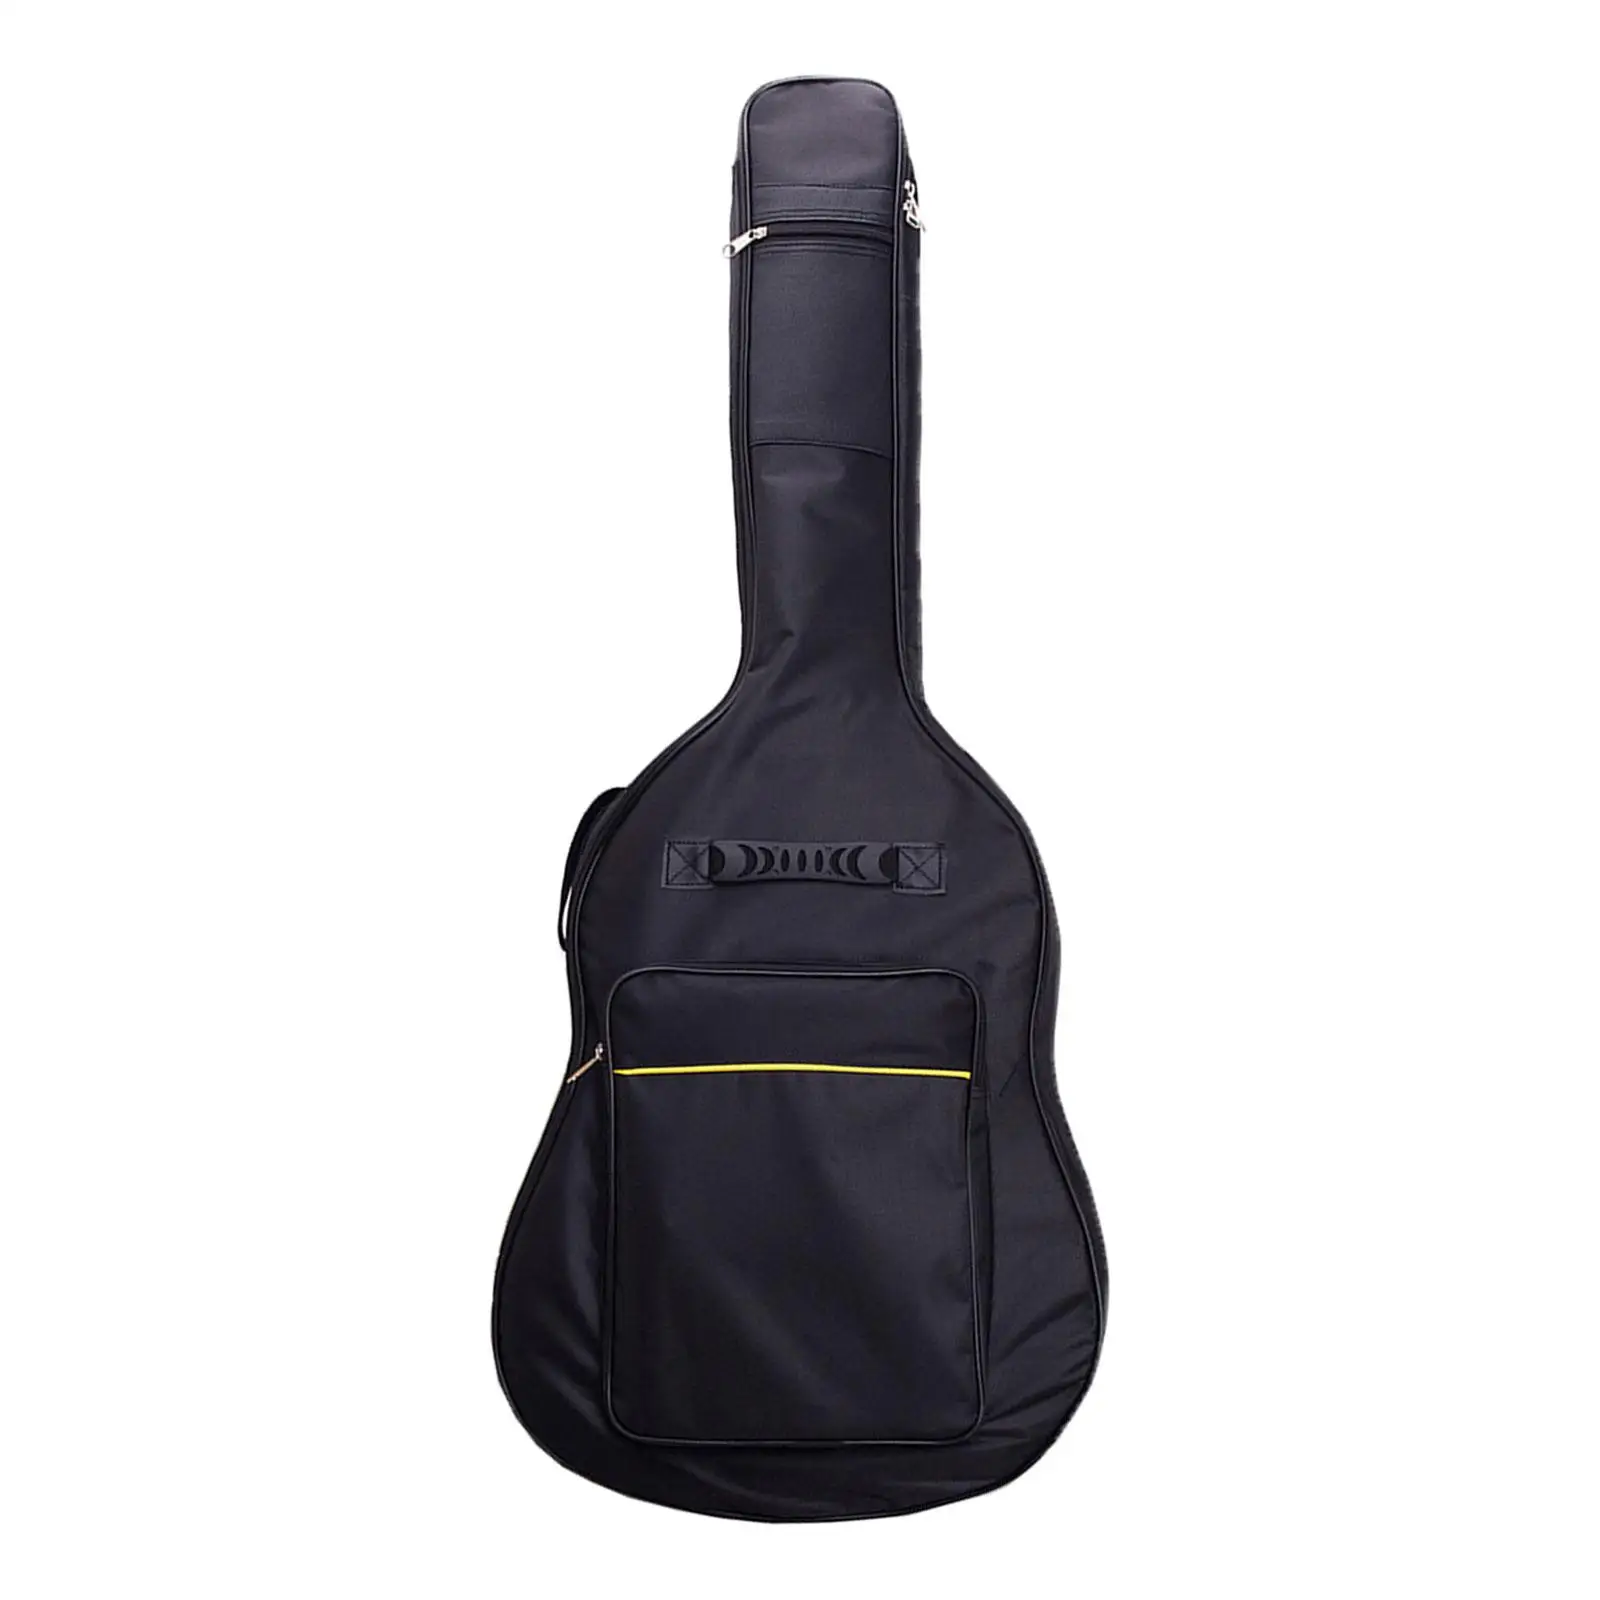 40/41 in Acoustic Guitar Bag Adjustable Shoulder Strap for Classical Guitar